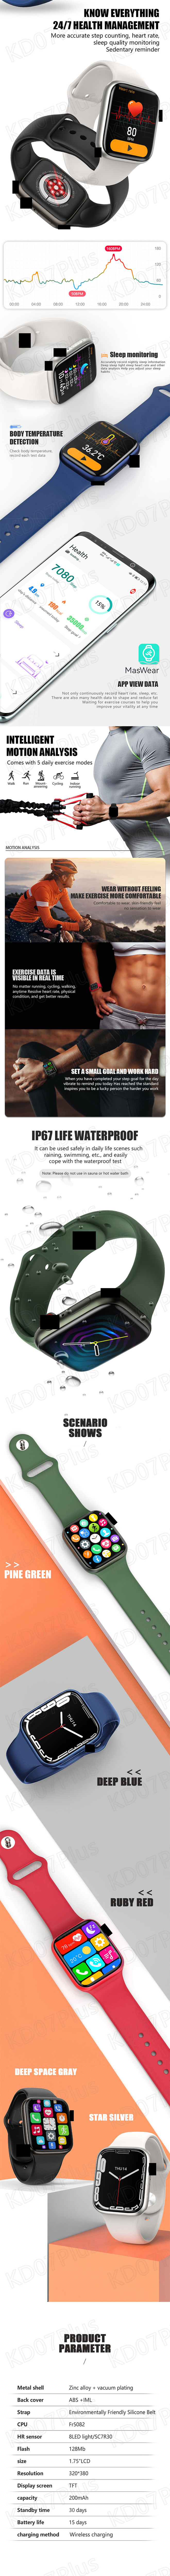 KD17Pro Smart Watch